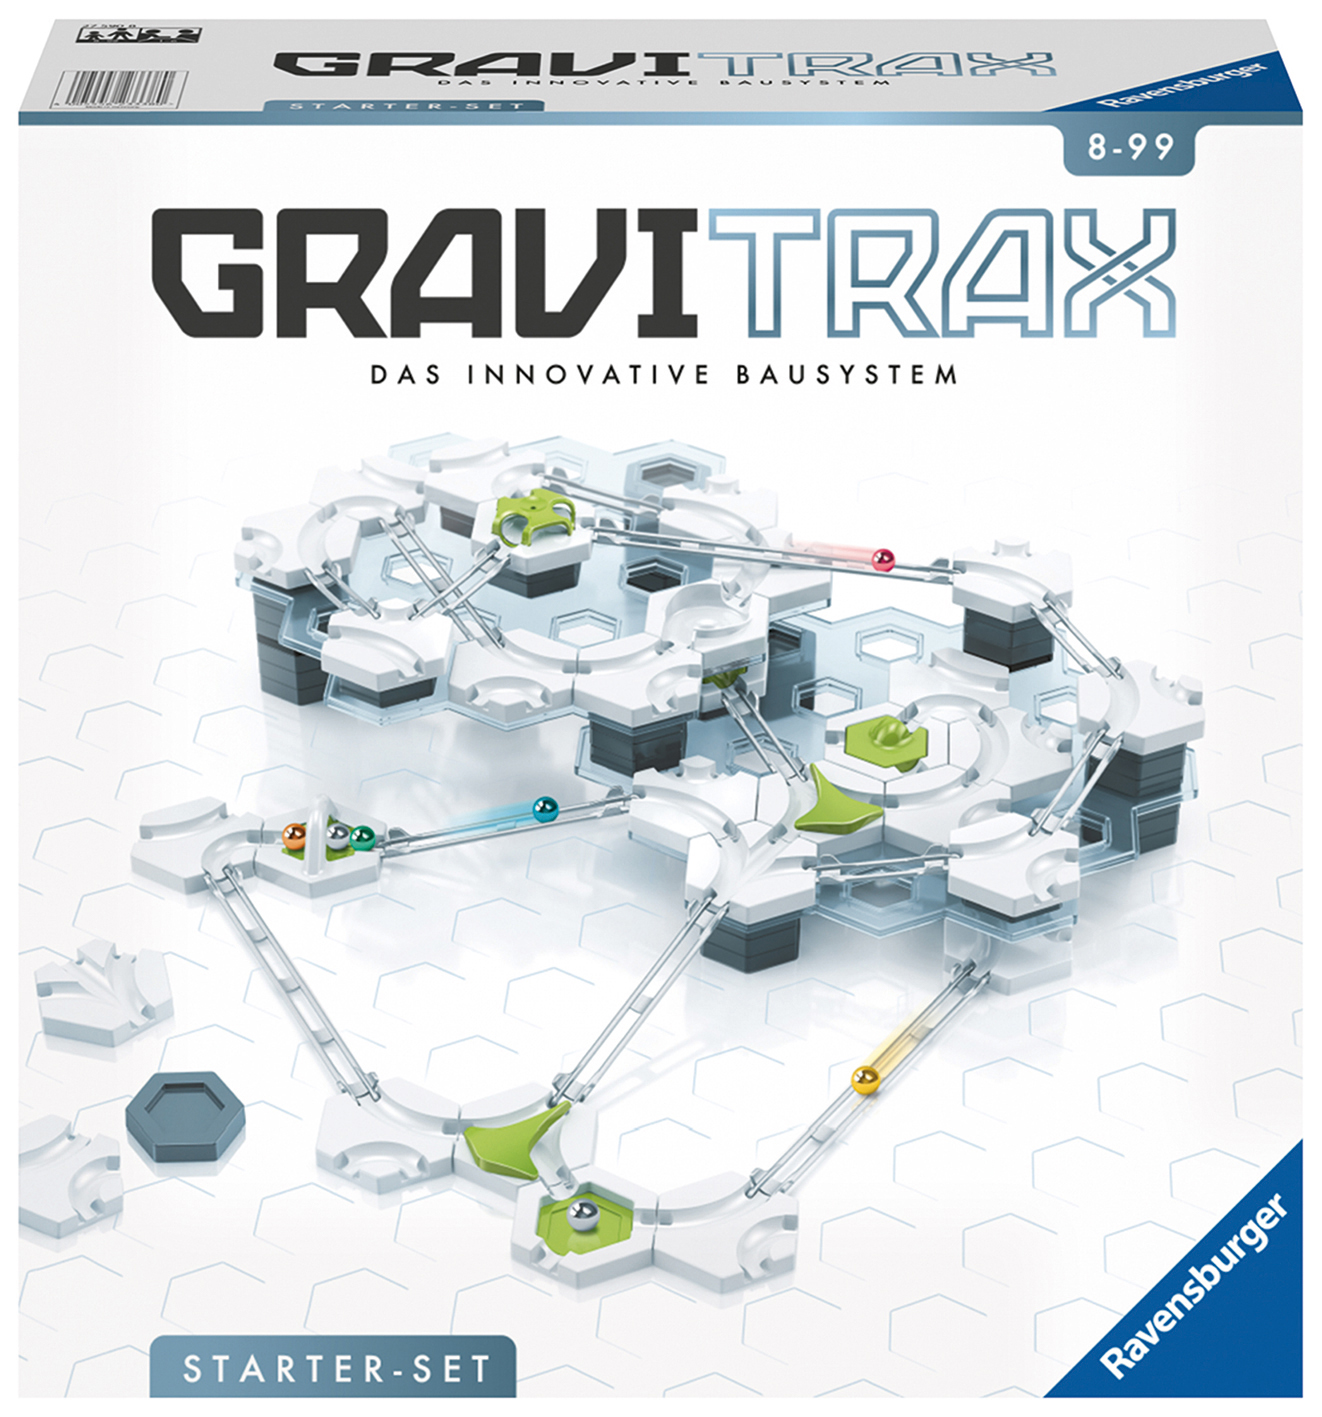 GraviTrax - Rätsel lösen mit physikalischen Mitteln